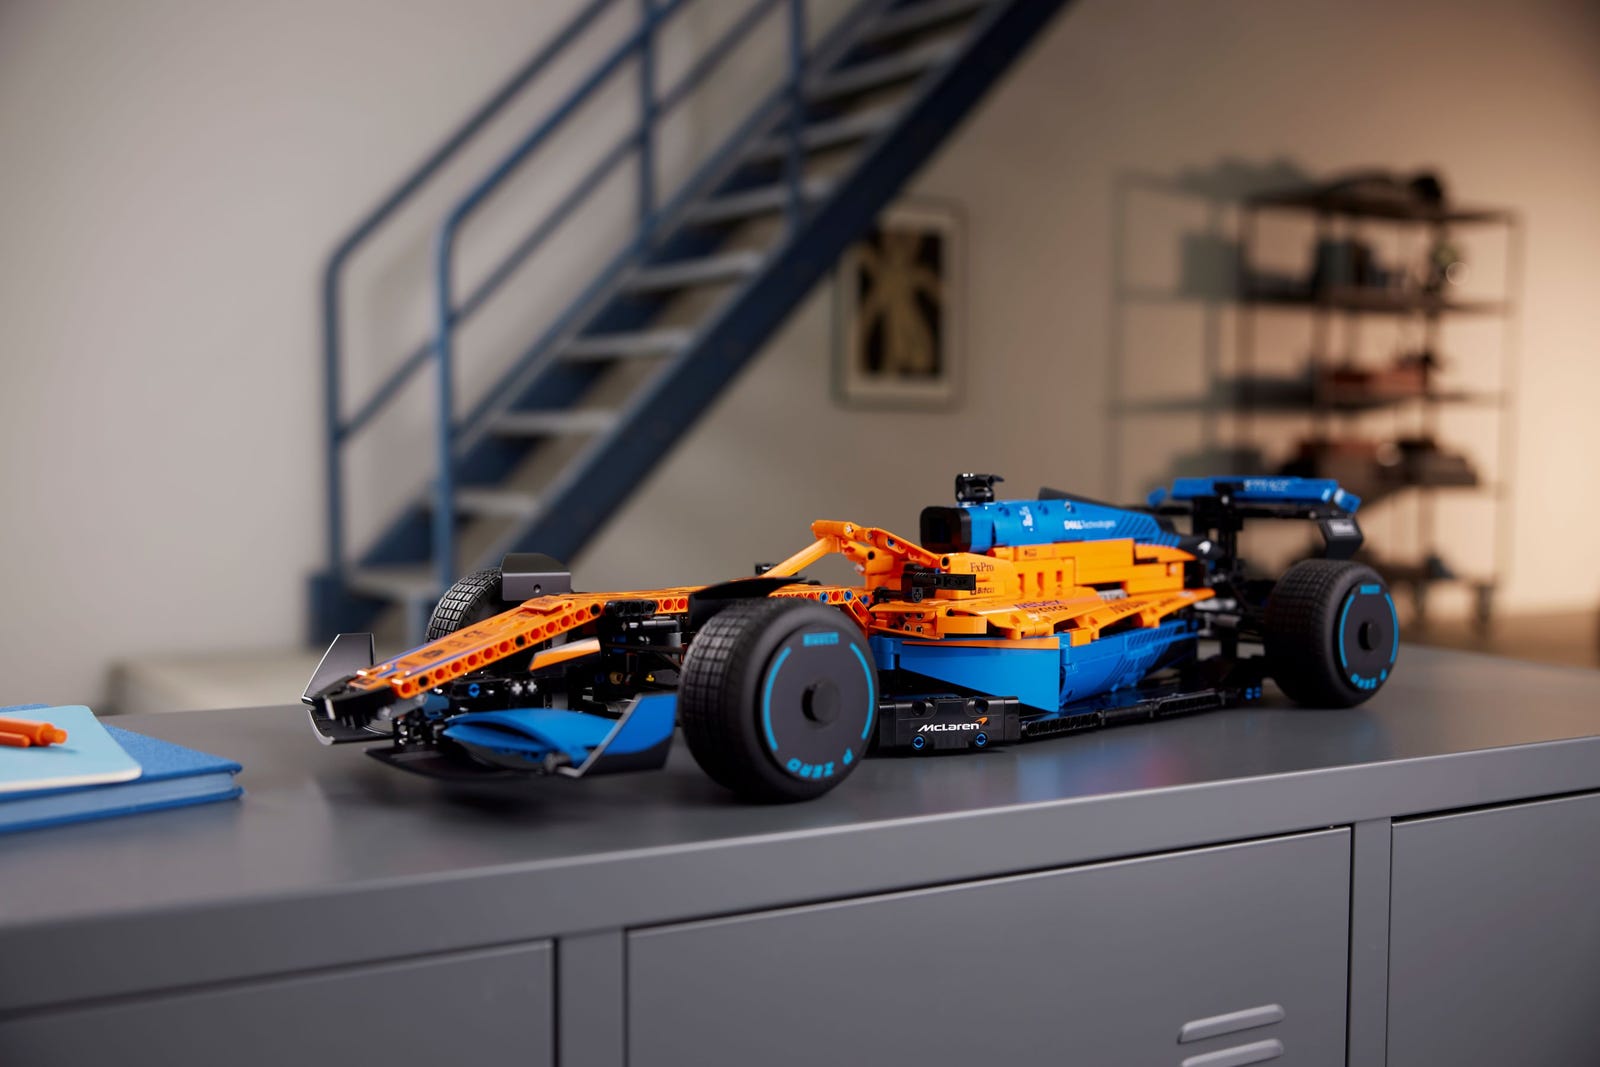 Lego McLaren Formule 1 1